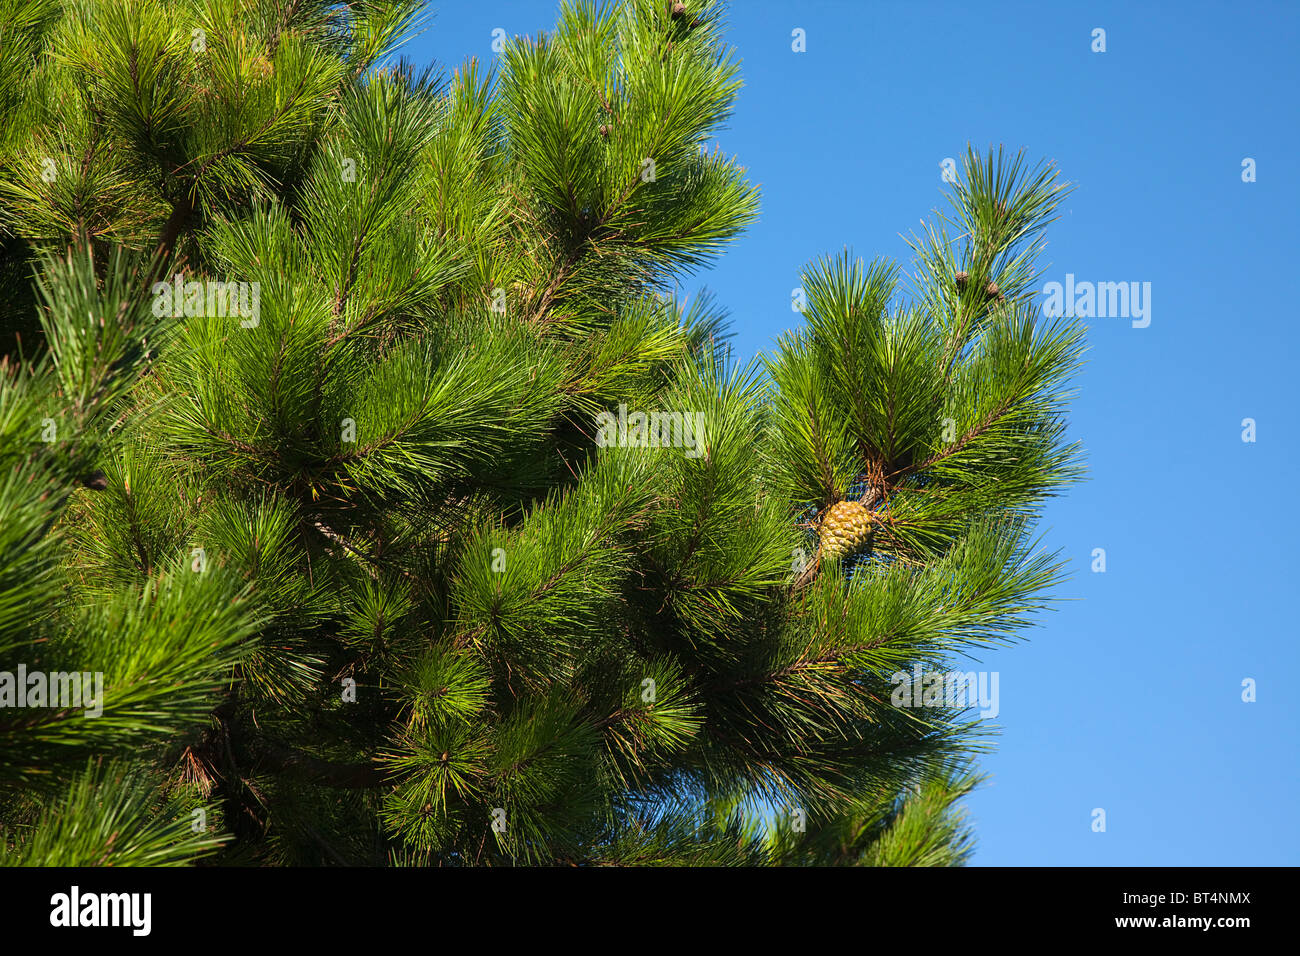 Flora & Fauna, plantas, árboles, Detalle de pino con piñas visible. Foto de stock